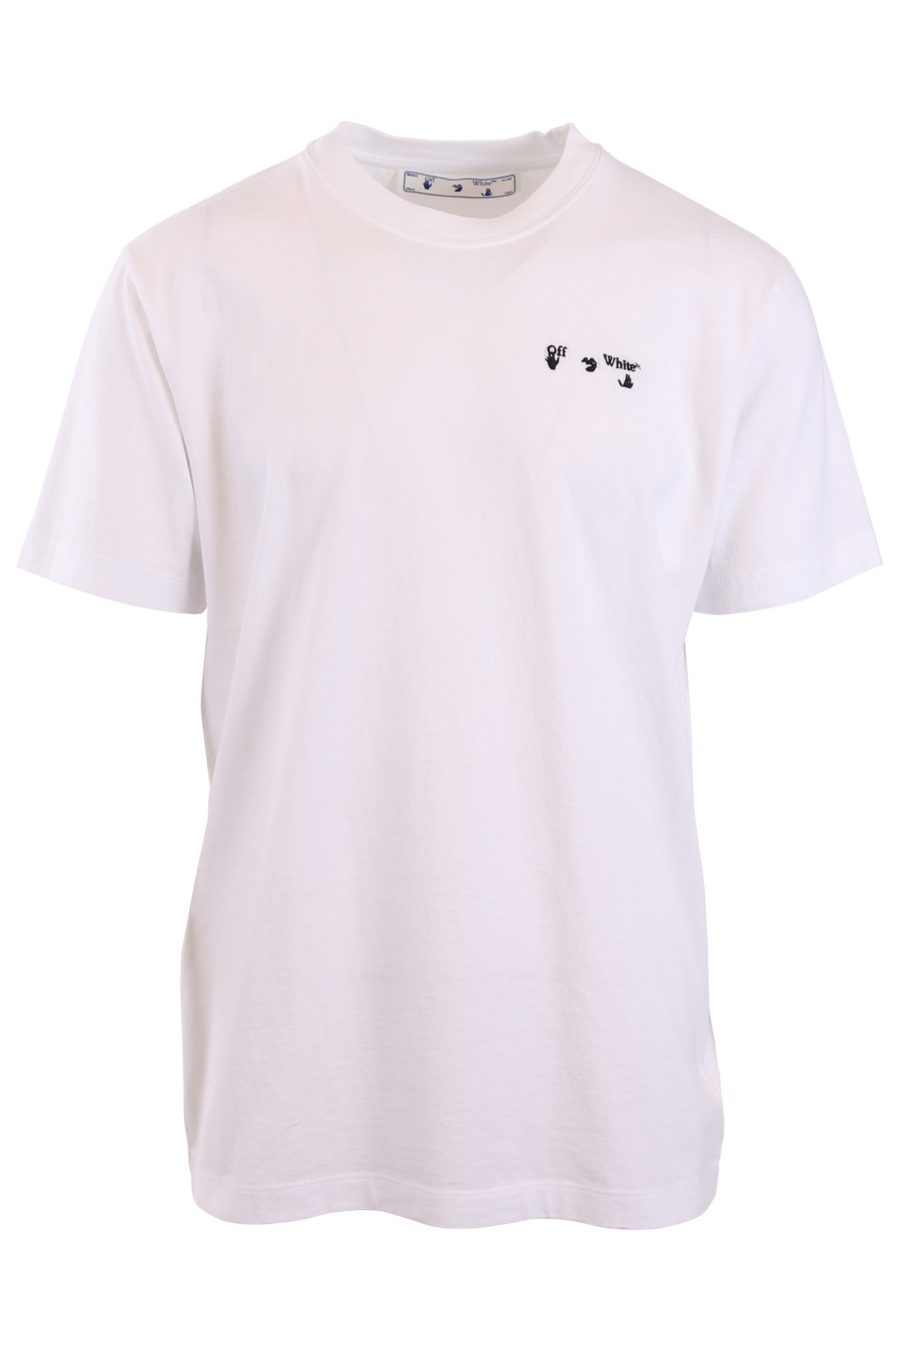 Camiseta Off-White blanca logo bordado - a181321493469f4476a329491c3dd162f2d115f6